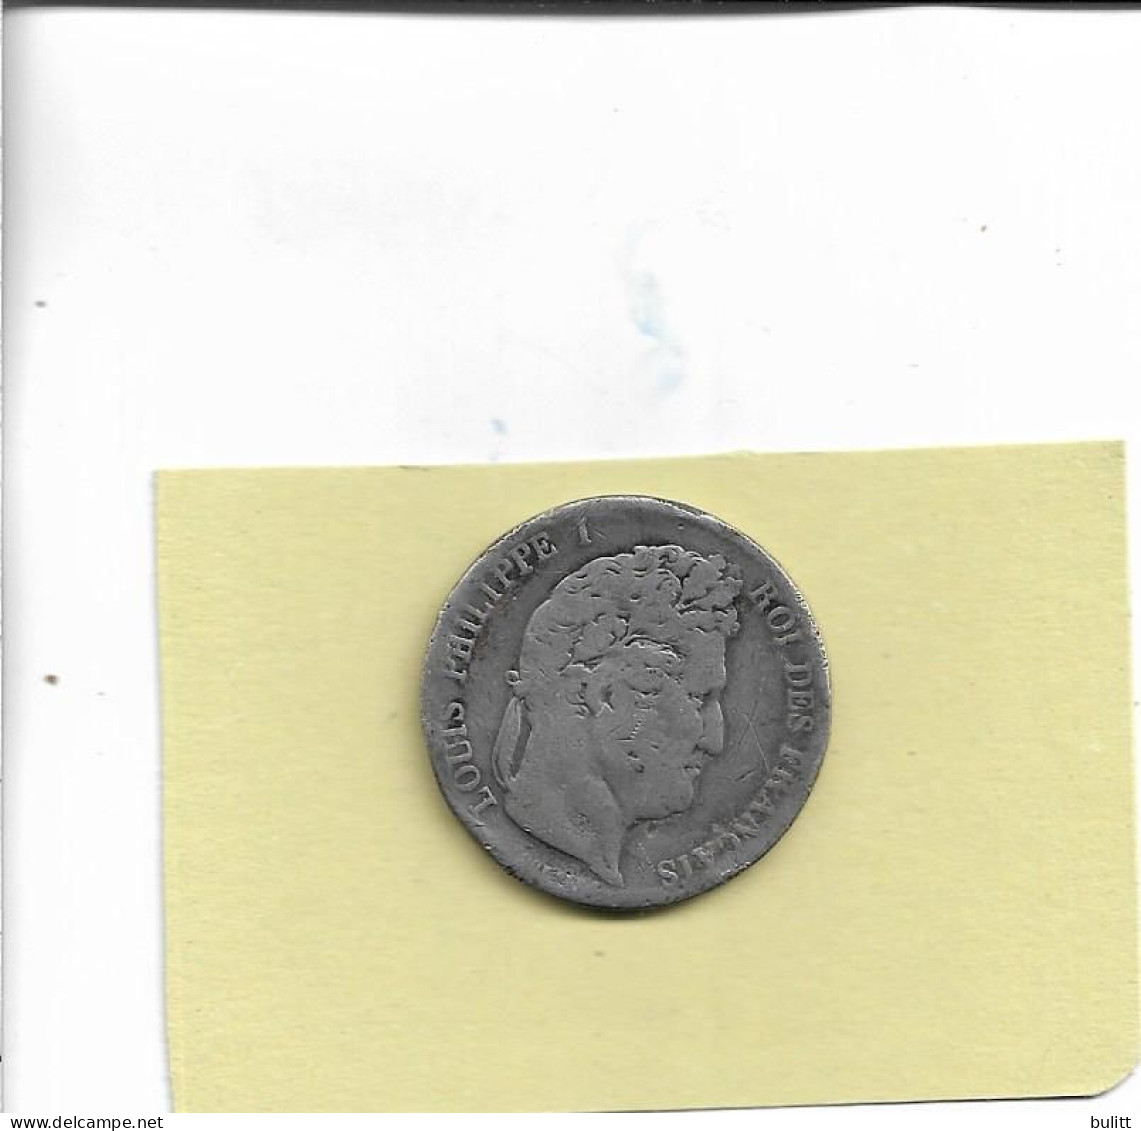 PIECE - France - Pièce De 5 Francs Louis Philippe 1 - Roi Des Français - Année 1844 - 5 Francs